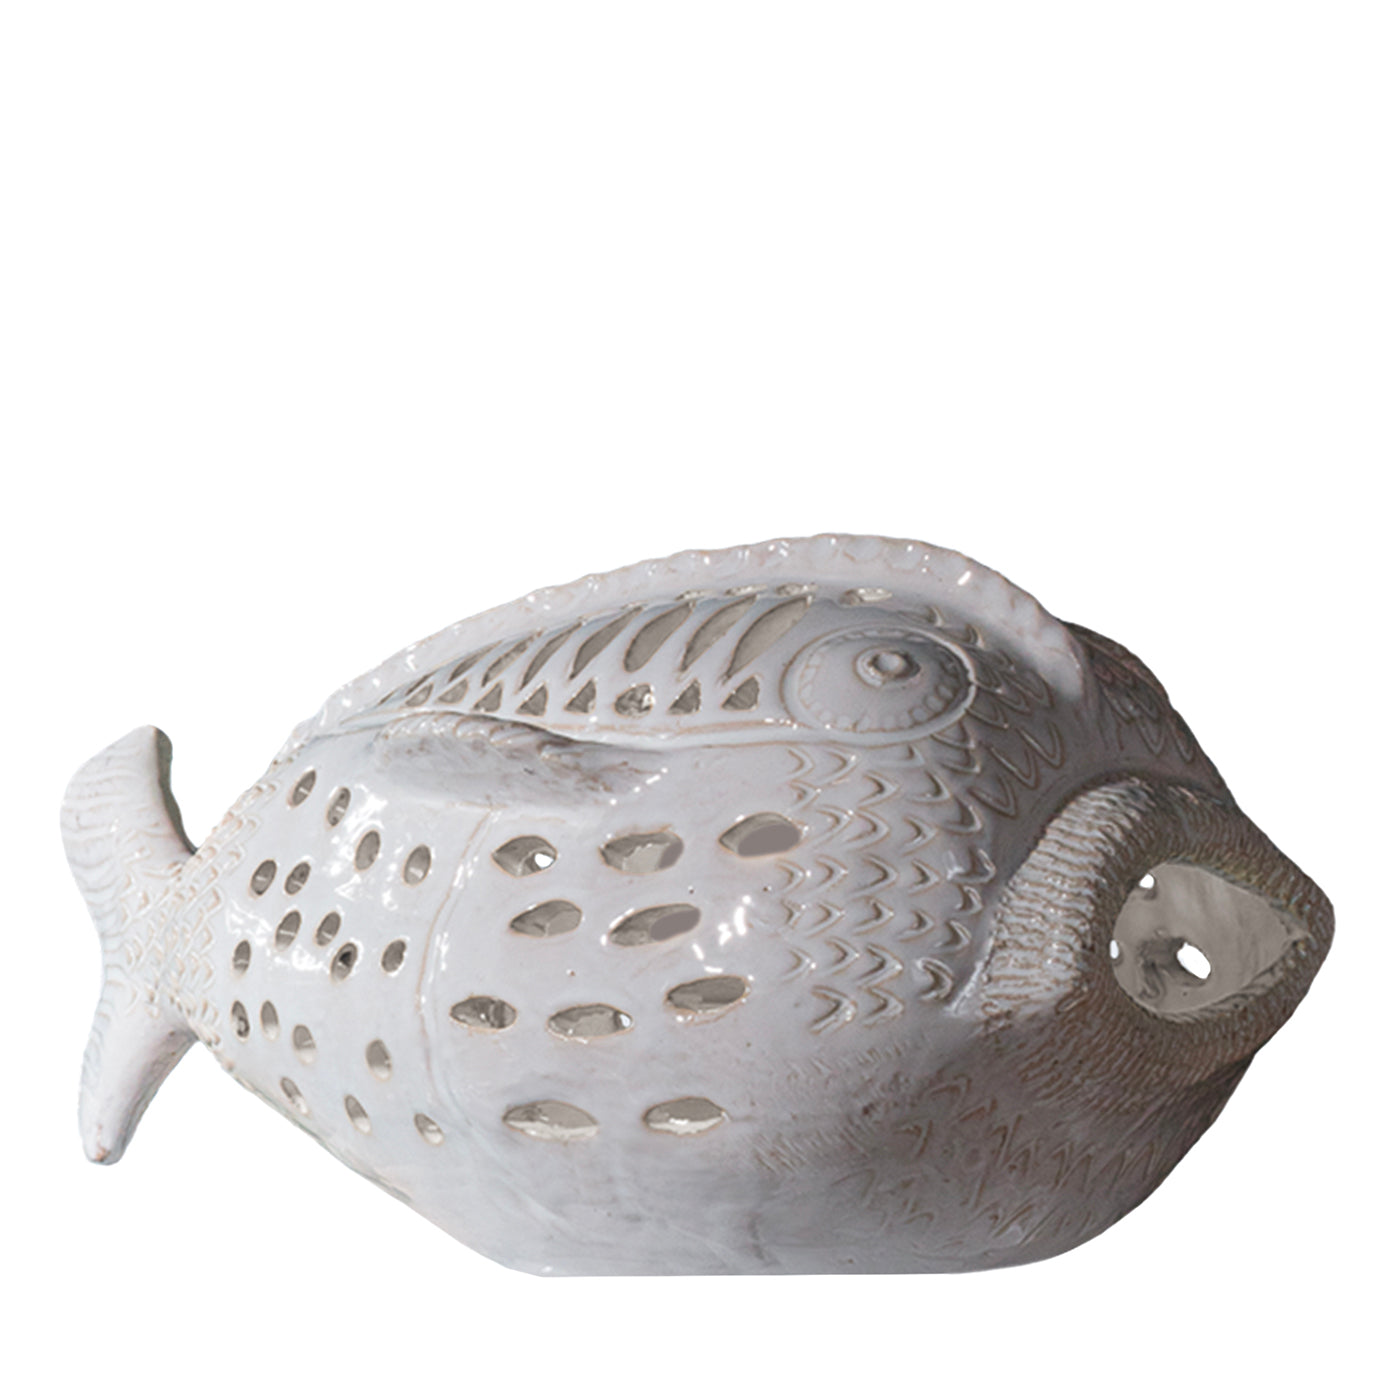 Perle Marine Pesce Pagliaccio N. 6 White Sculpture  - Vue principale